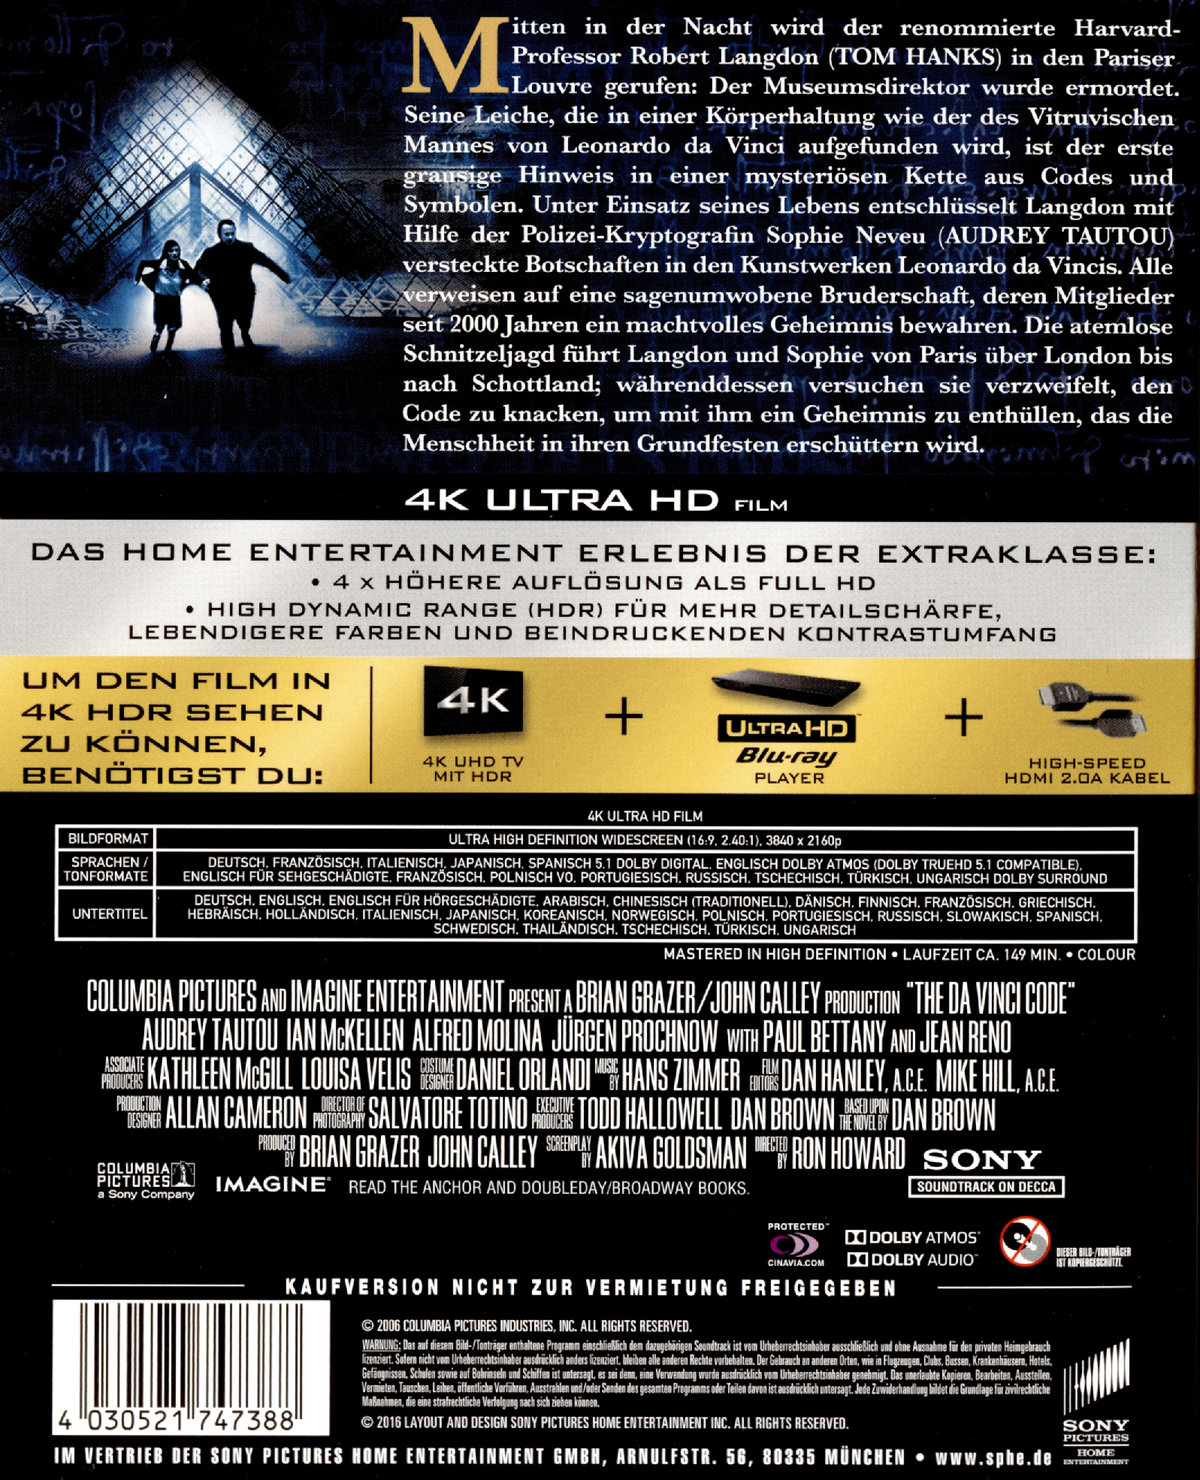 Da Vinci Code, The - Sakrileg (4K Ultra HD)